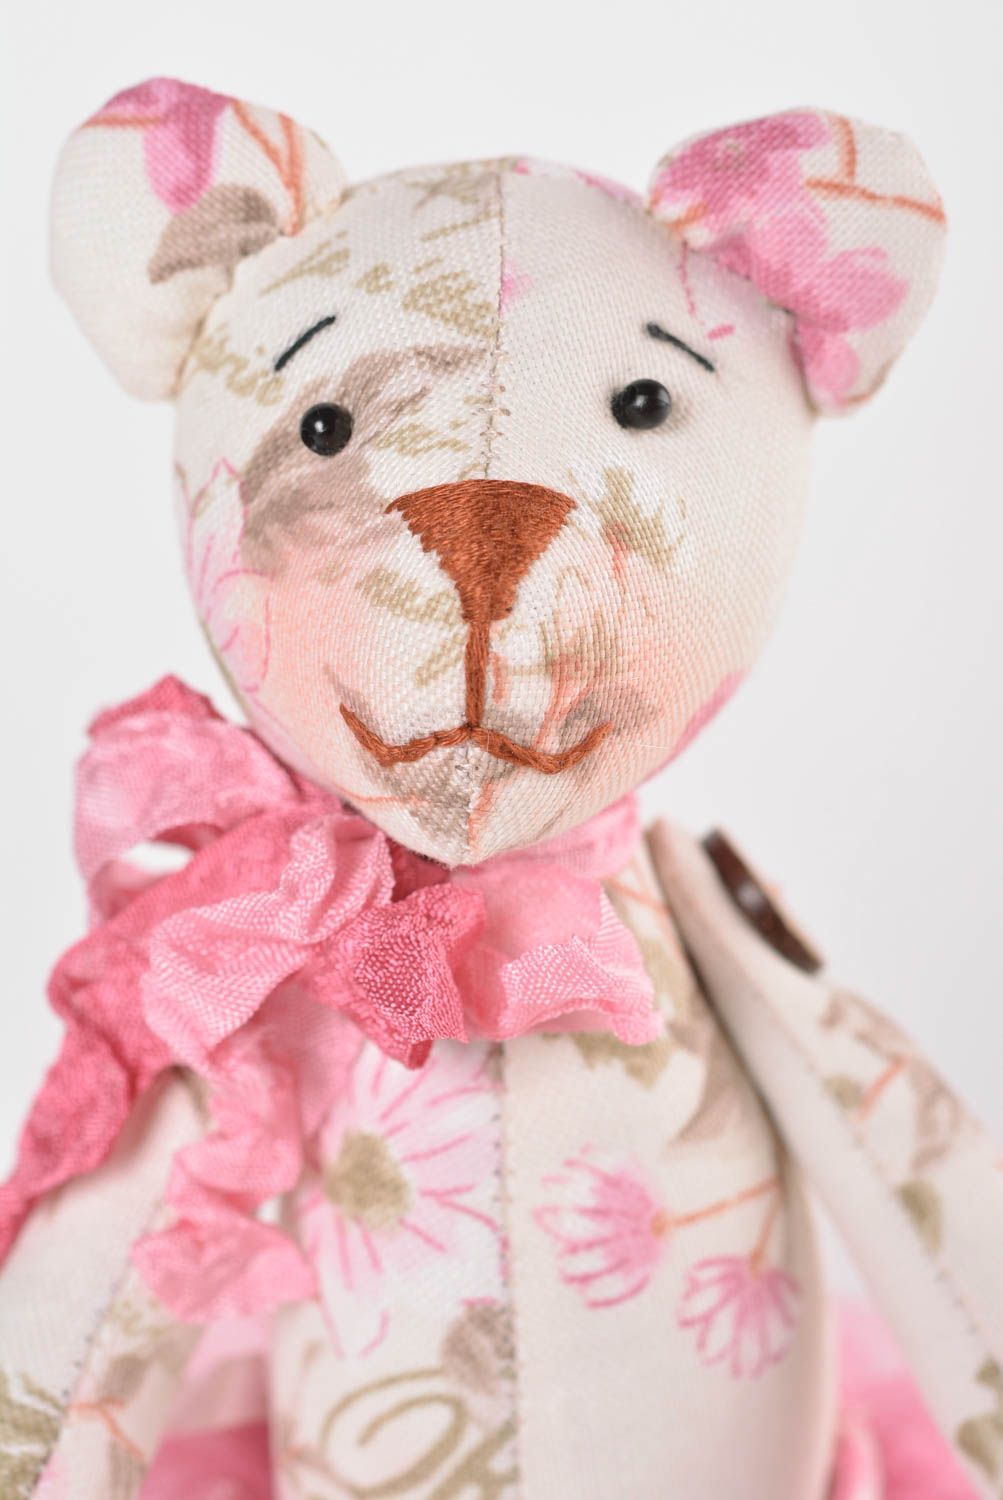 Игрушка мишка из ткани игрушка ручной работы интересный подарок для малыша фото 3